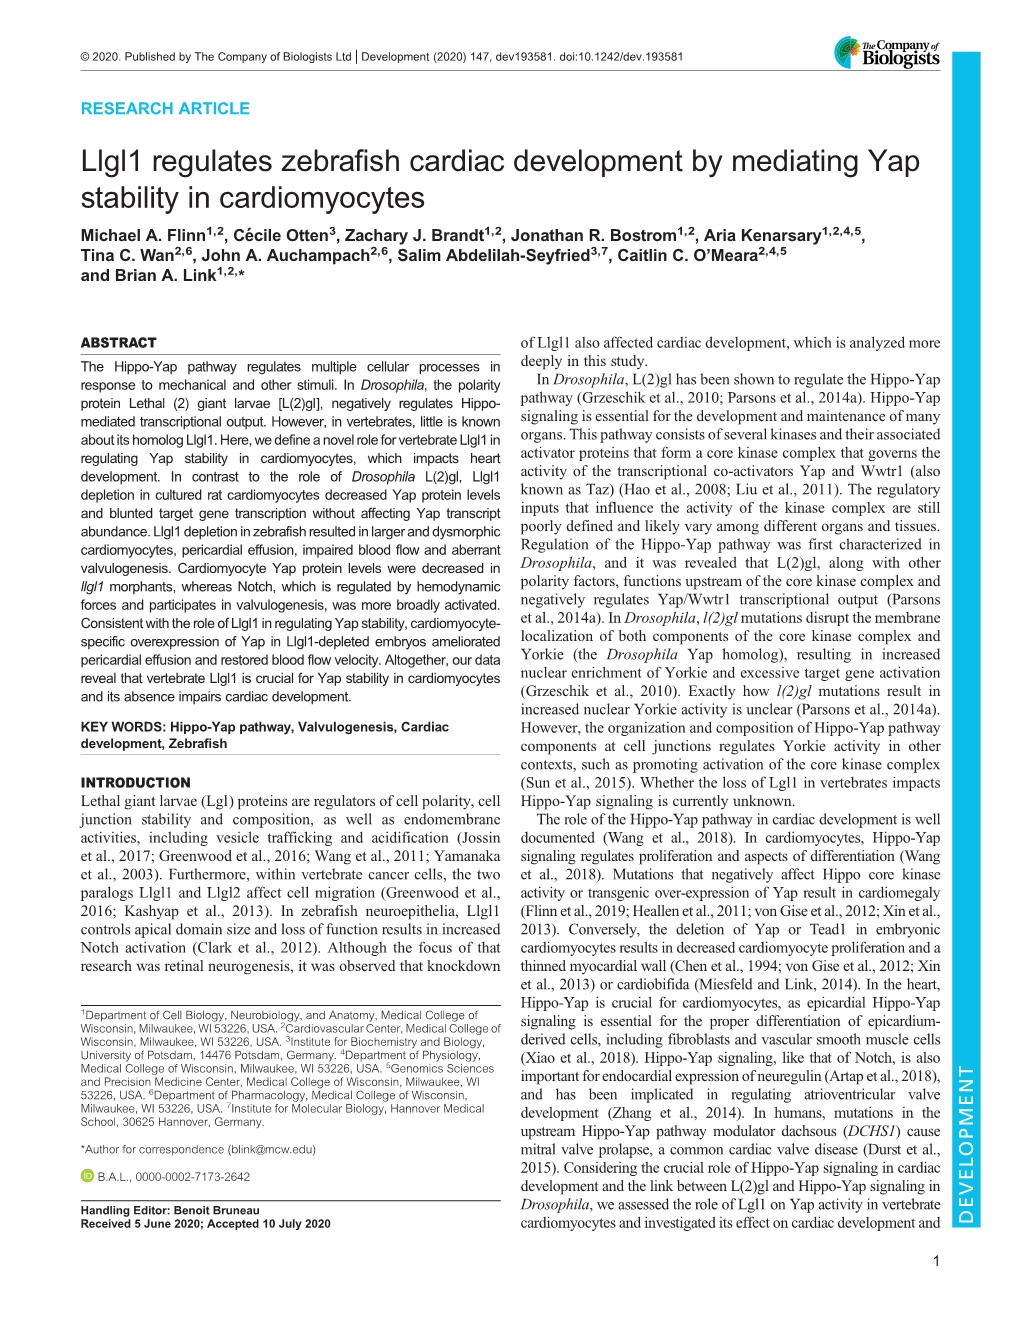 Llgl1 Regulates Zebrafish Cardiac Development by Mediating Yap Stability in Cardiomyocytes Michael A